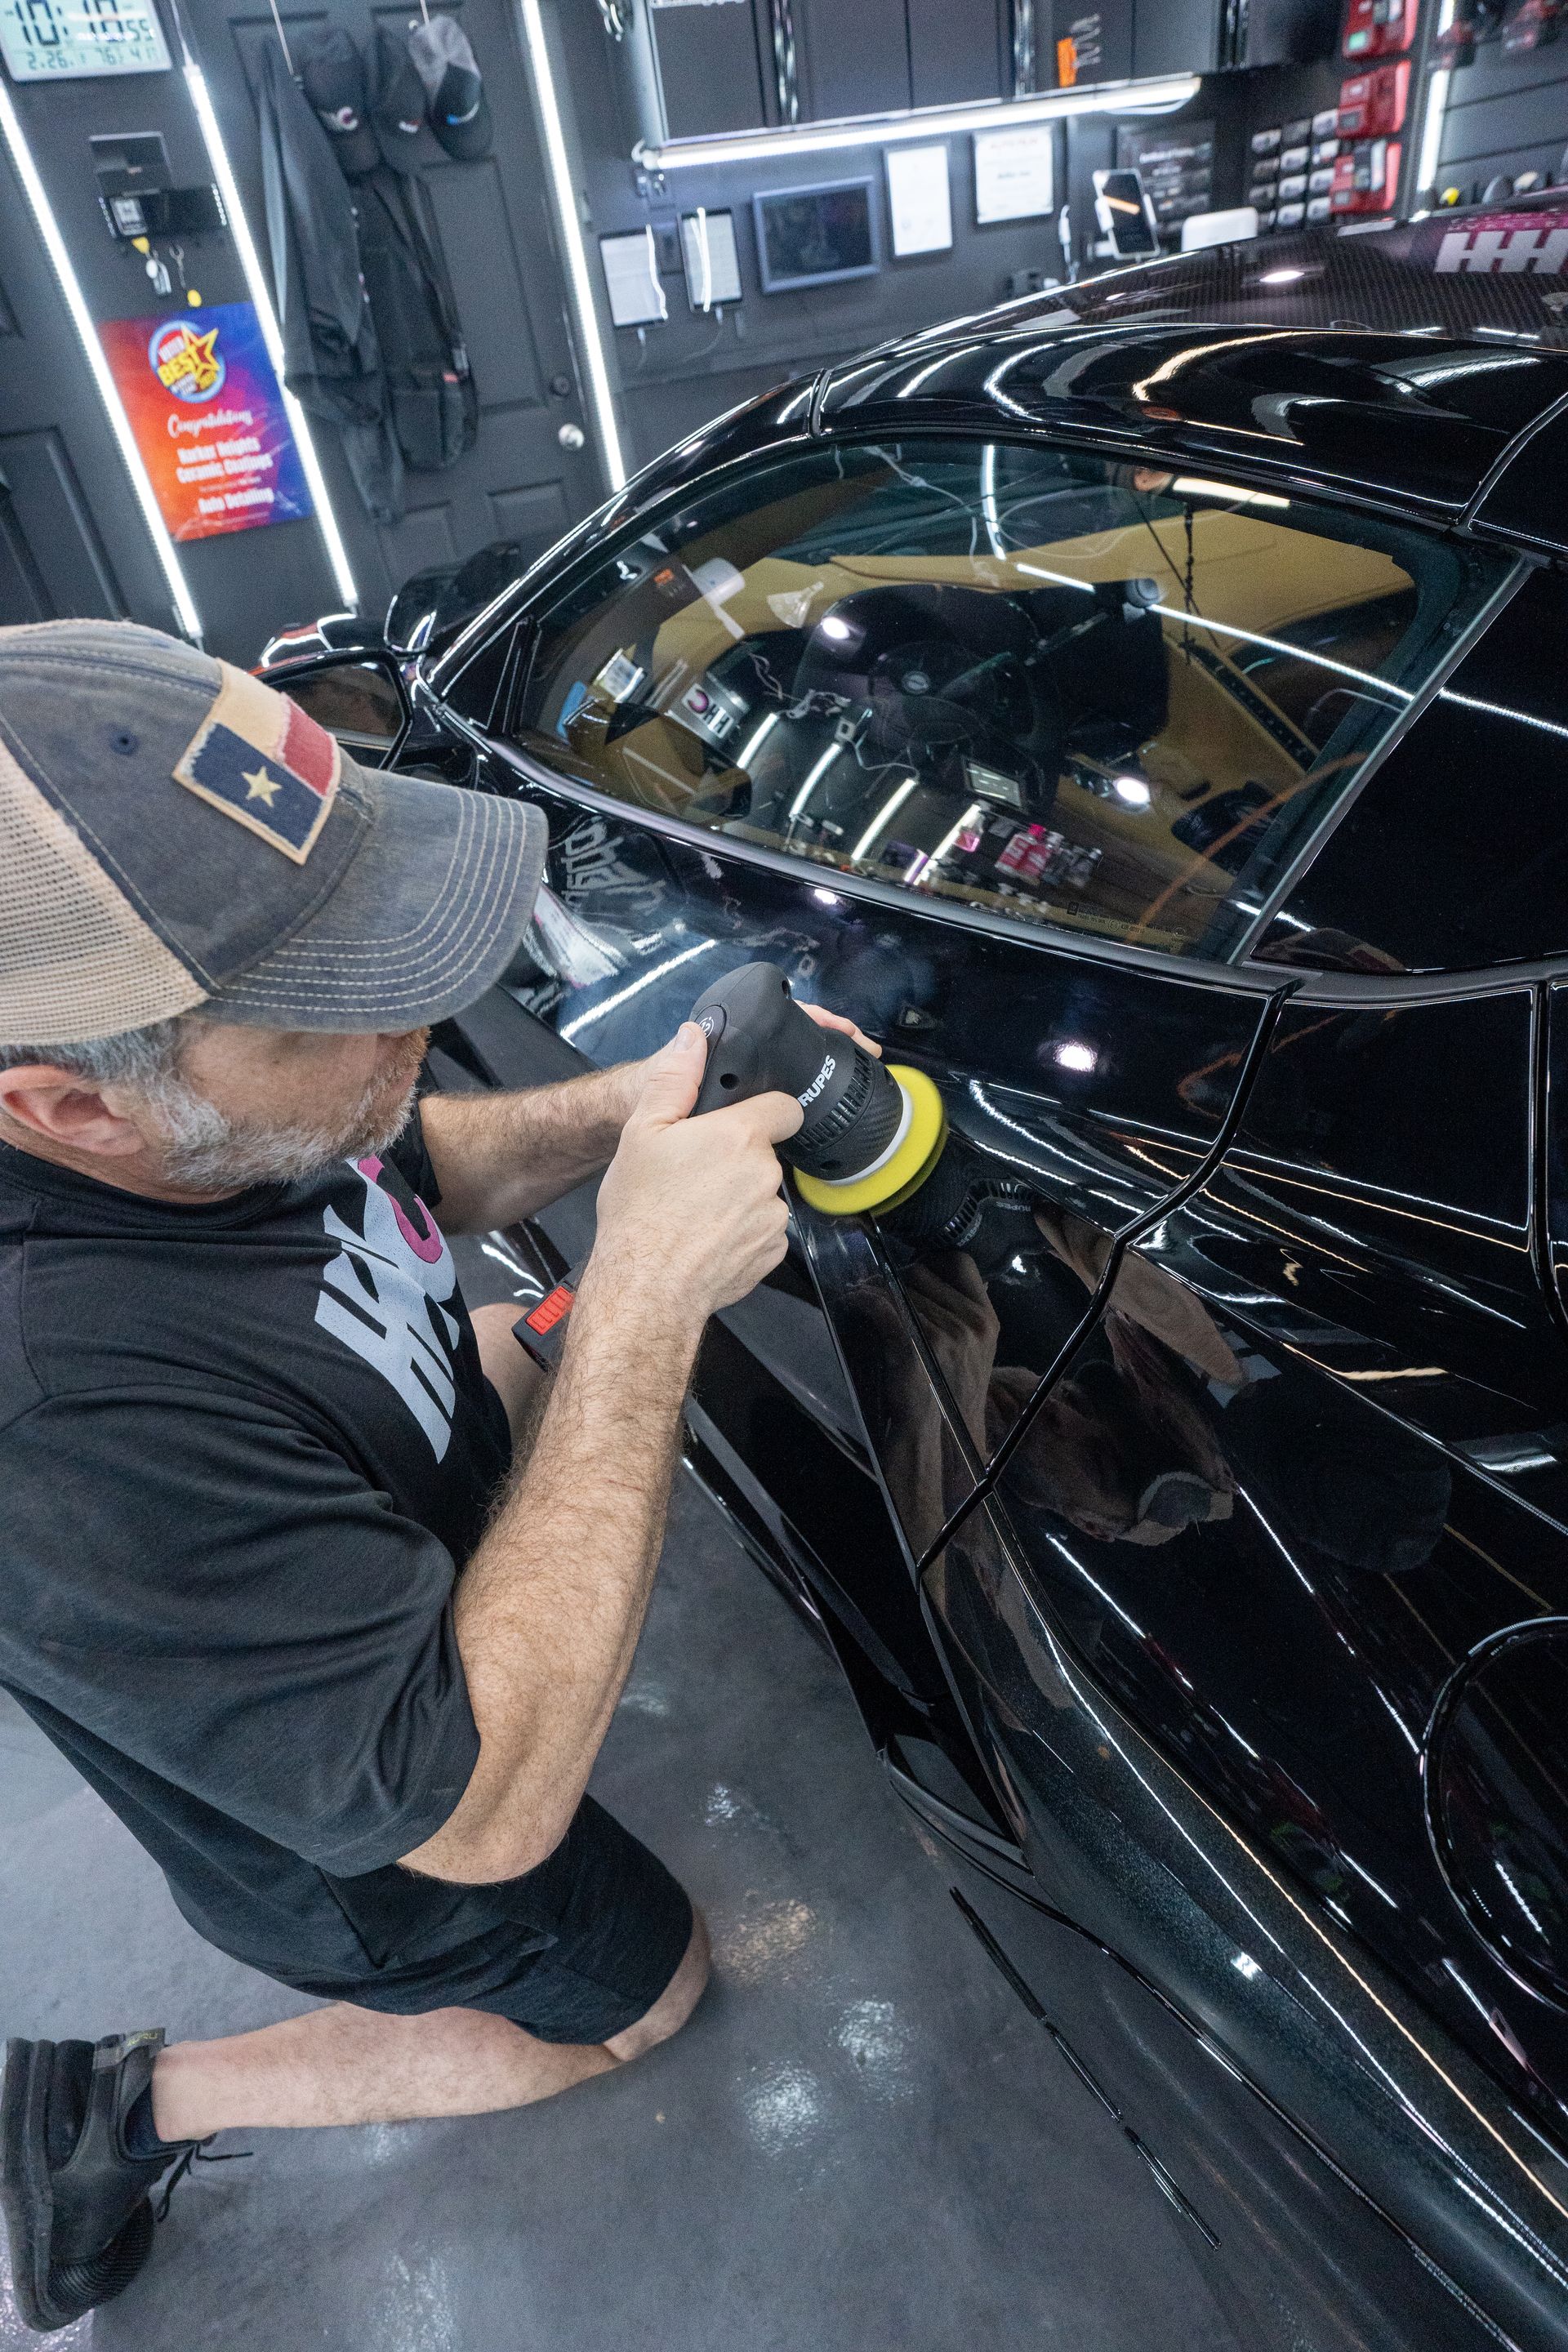 A man is polishing a black car in a garage.